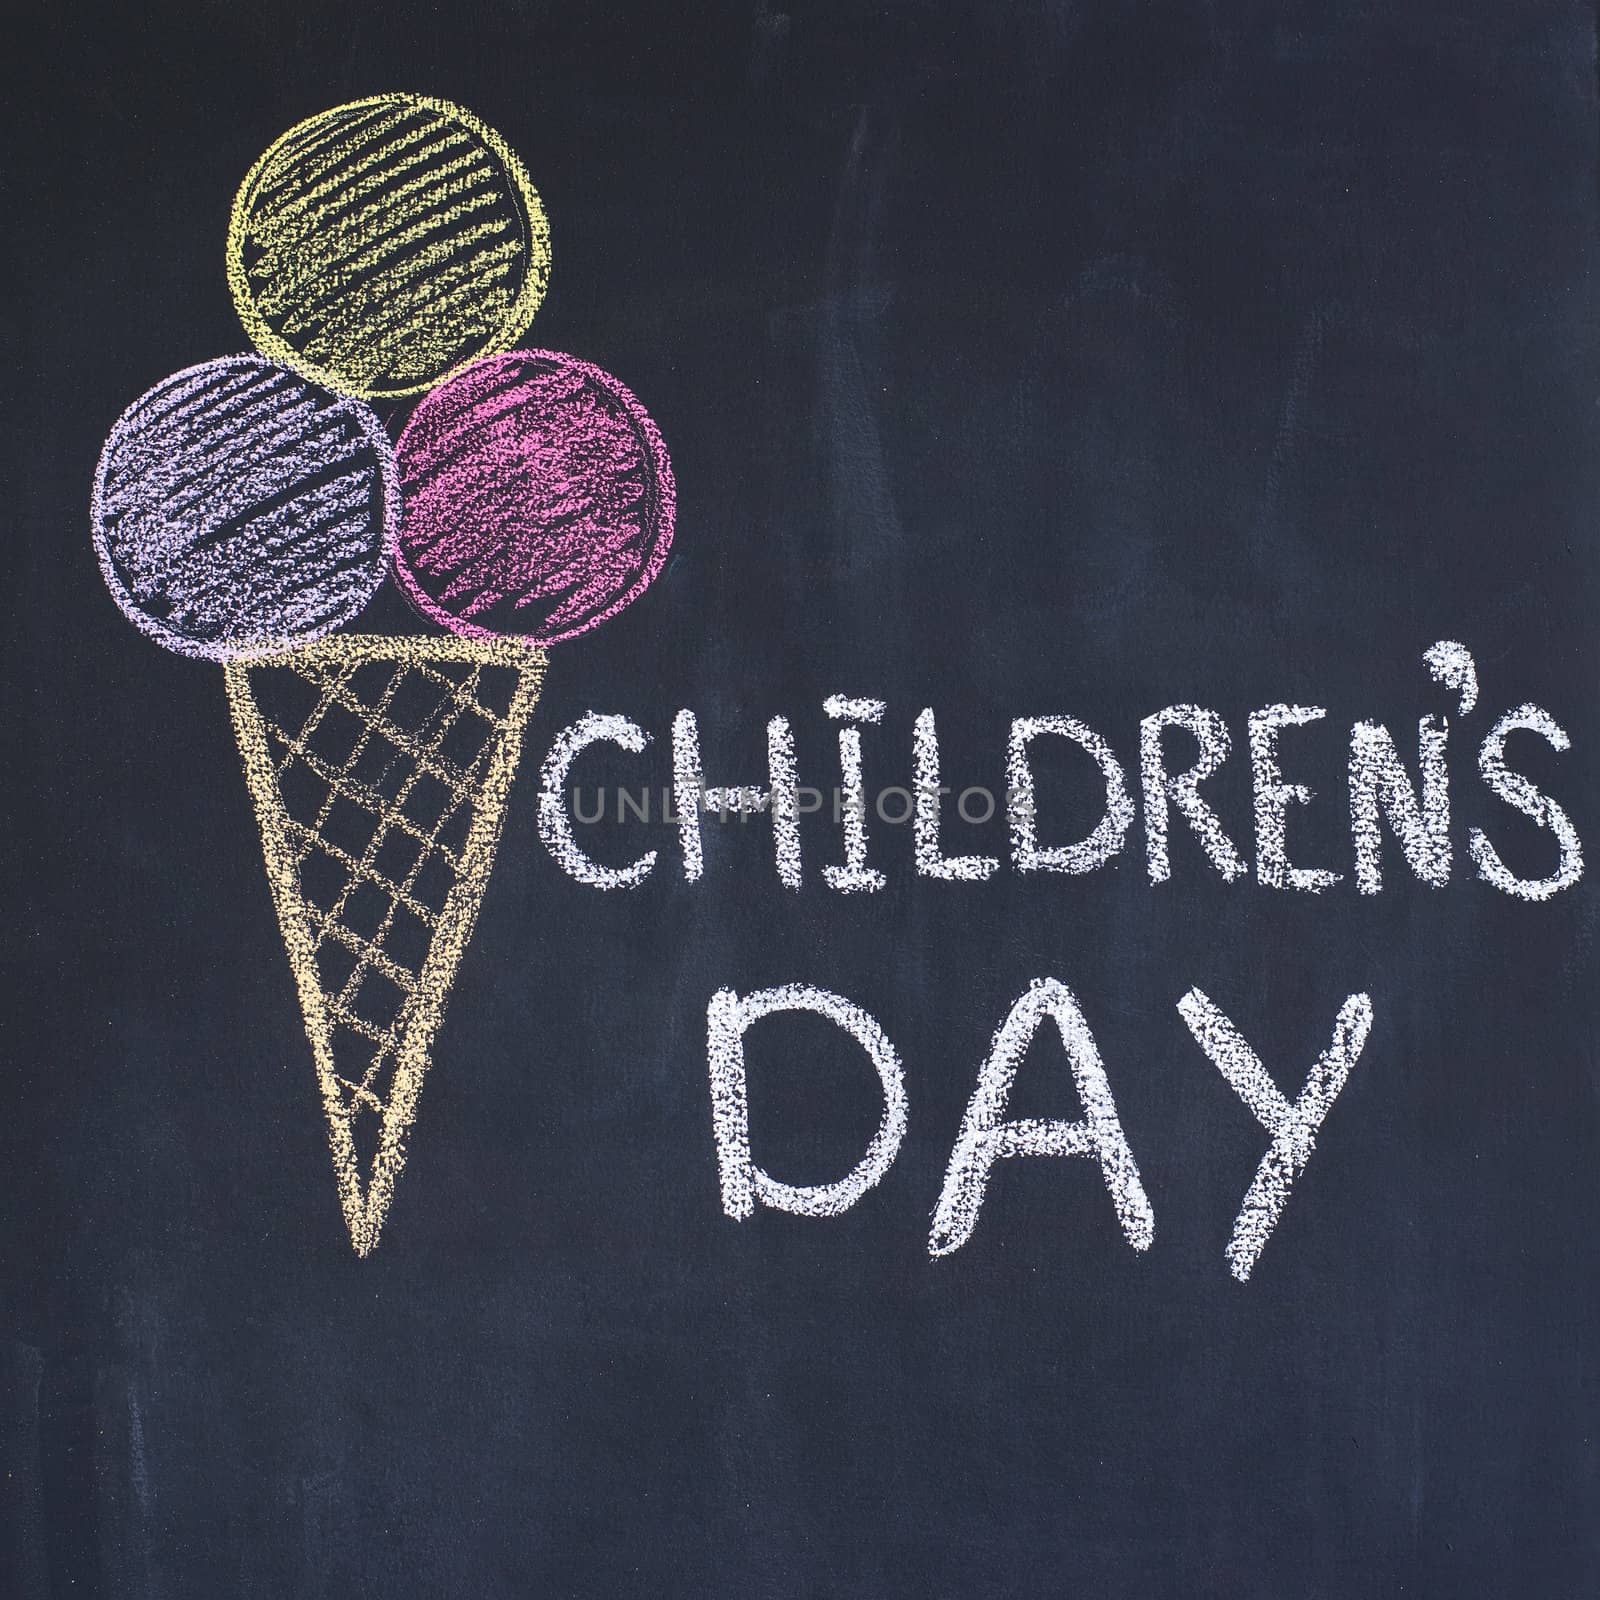 "Children's day"  written by a chalk on a blackboard